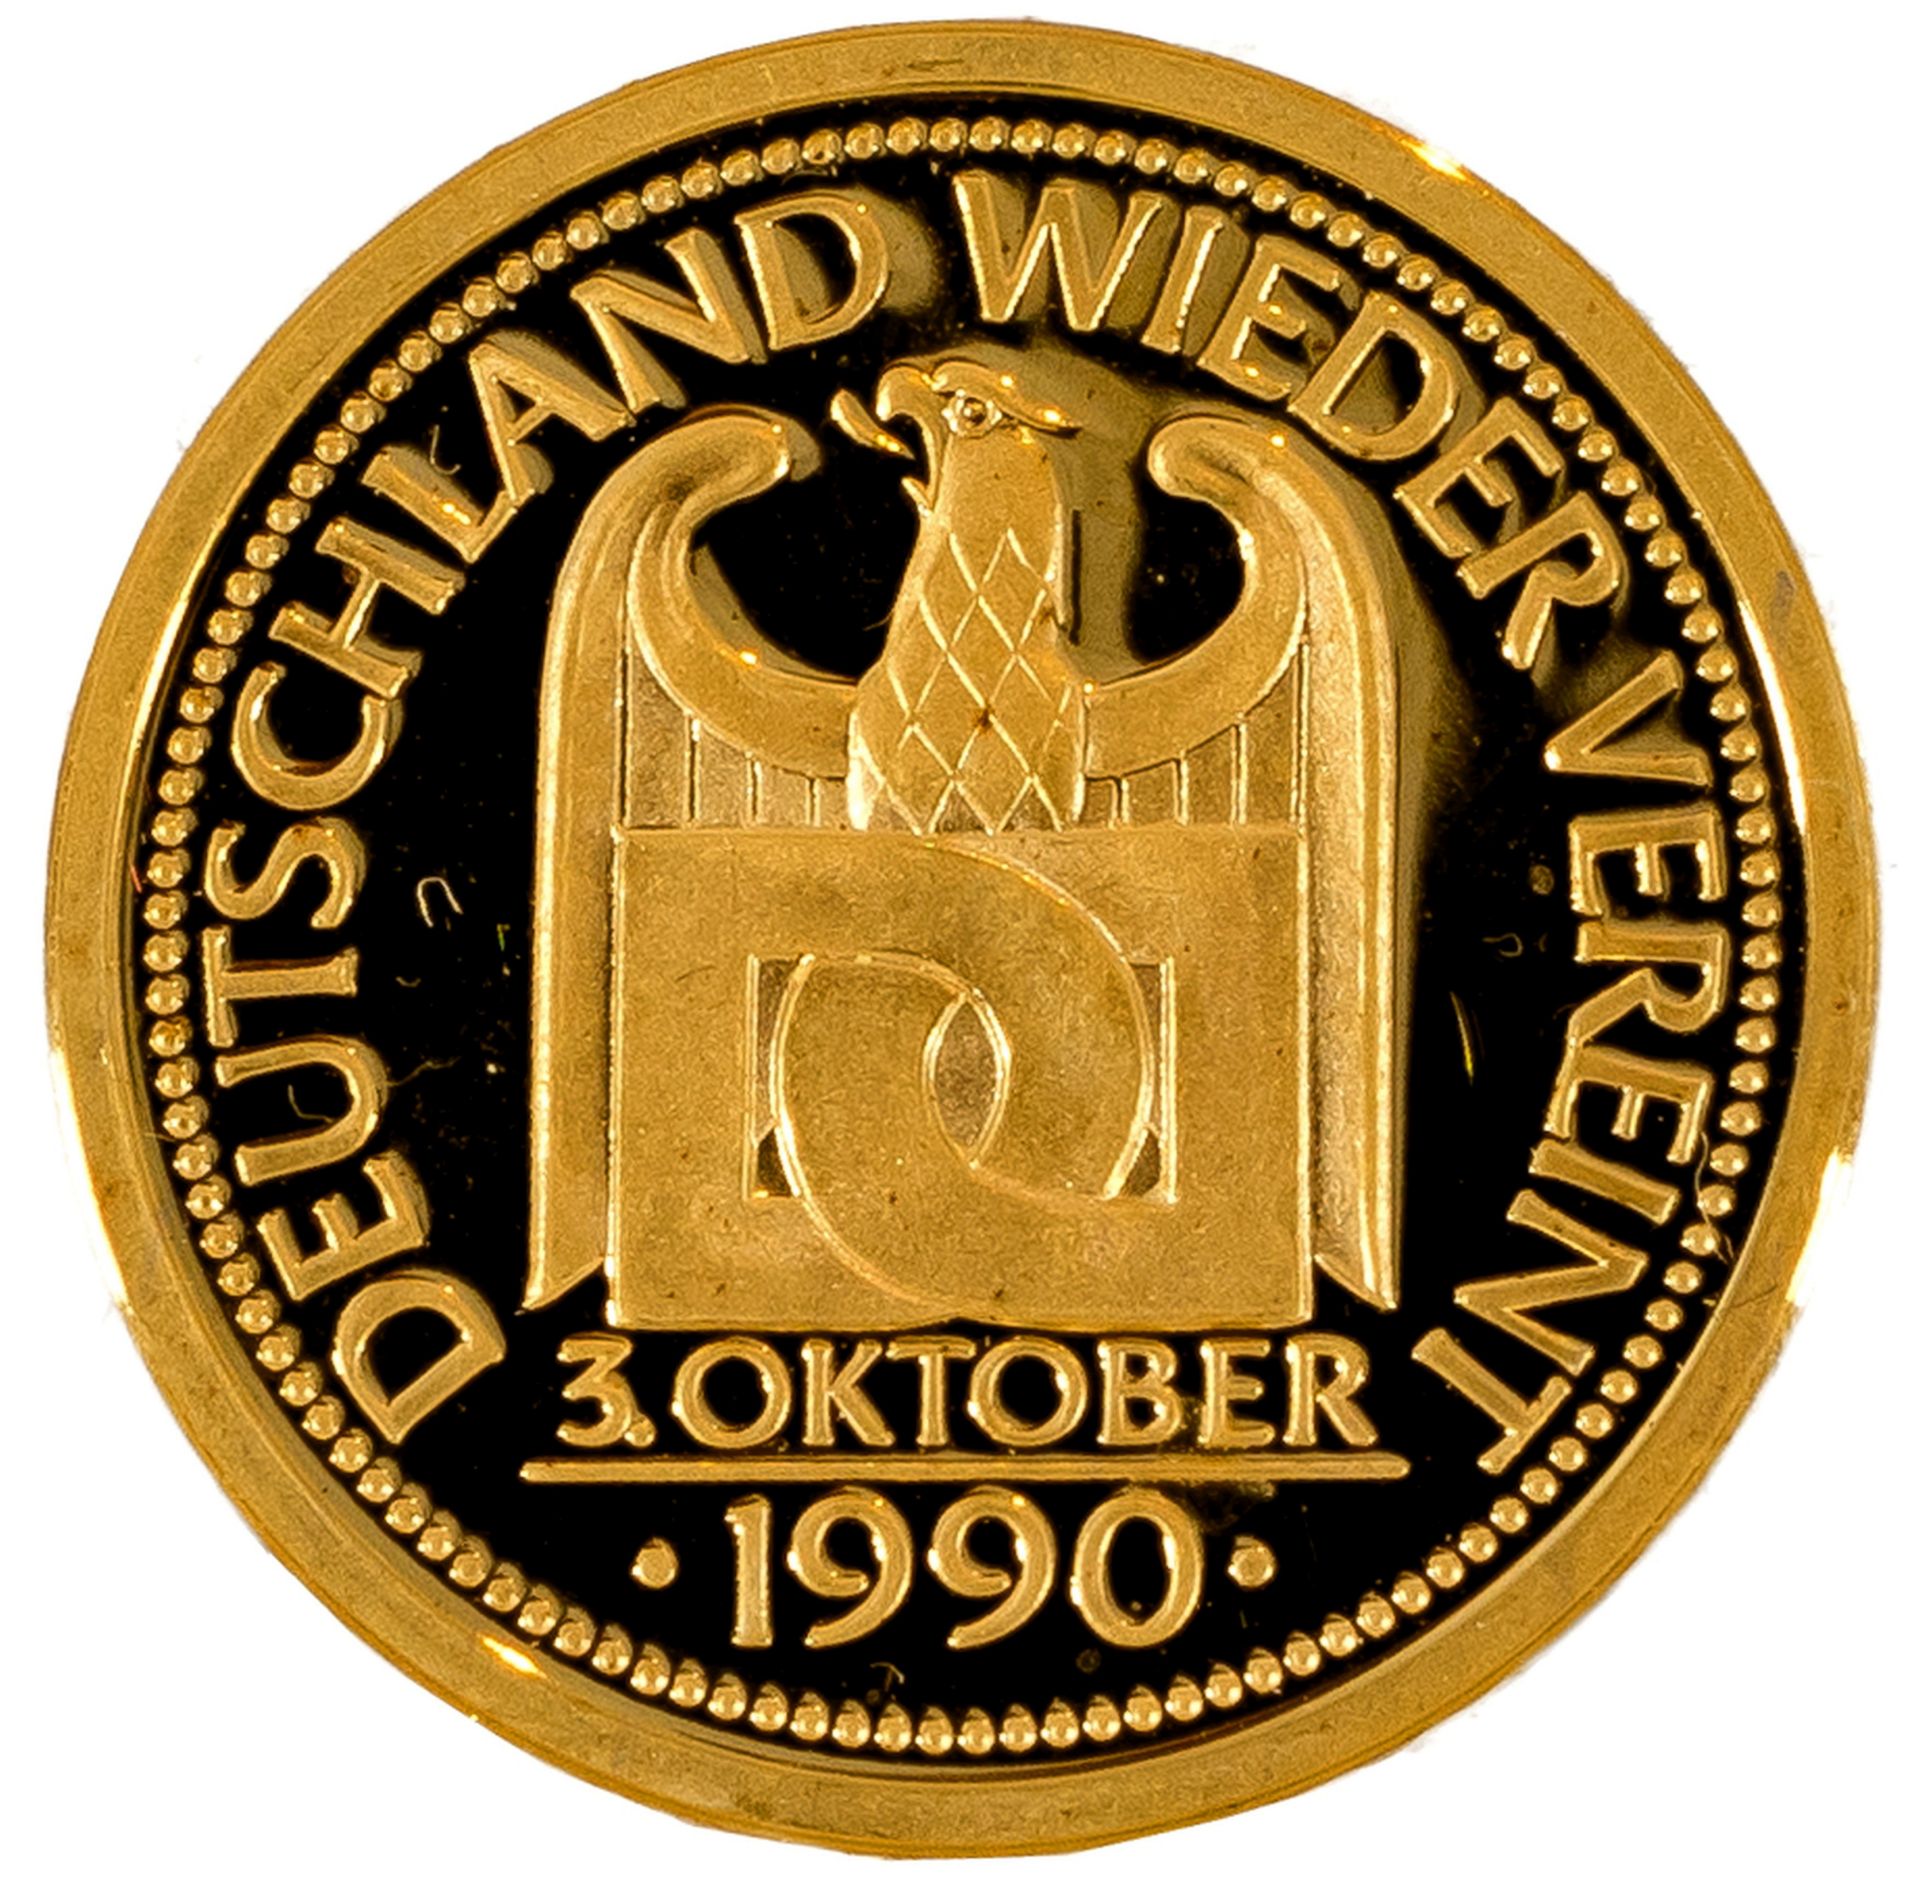 Feingoldmedaille der BRD auf die Wiedervereinigung vom 3. Oktober 1990 - Image 2 of 3